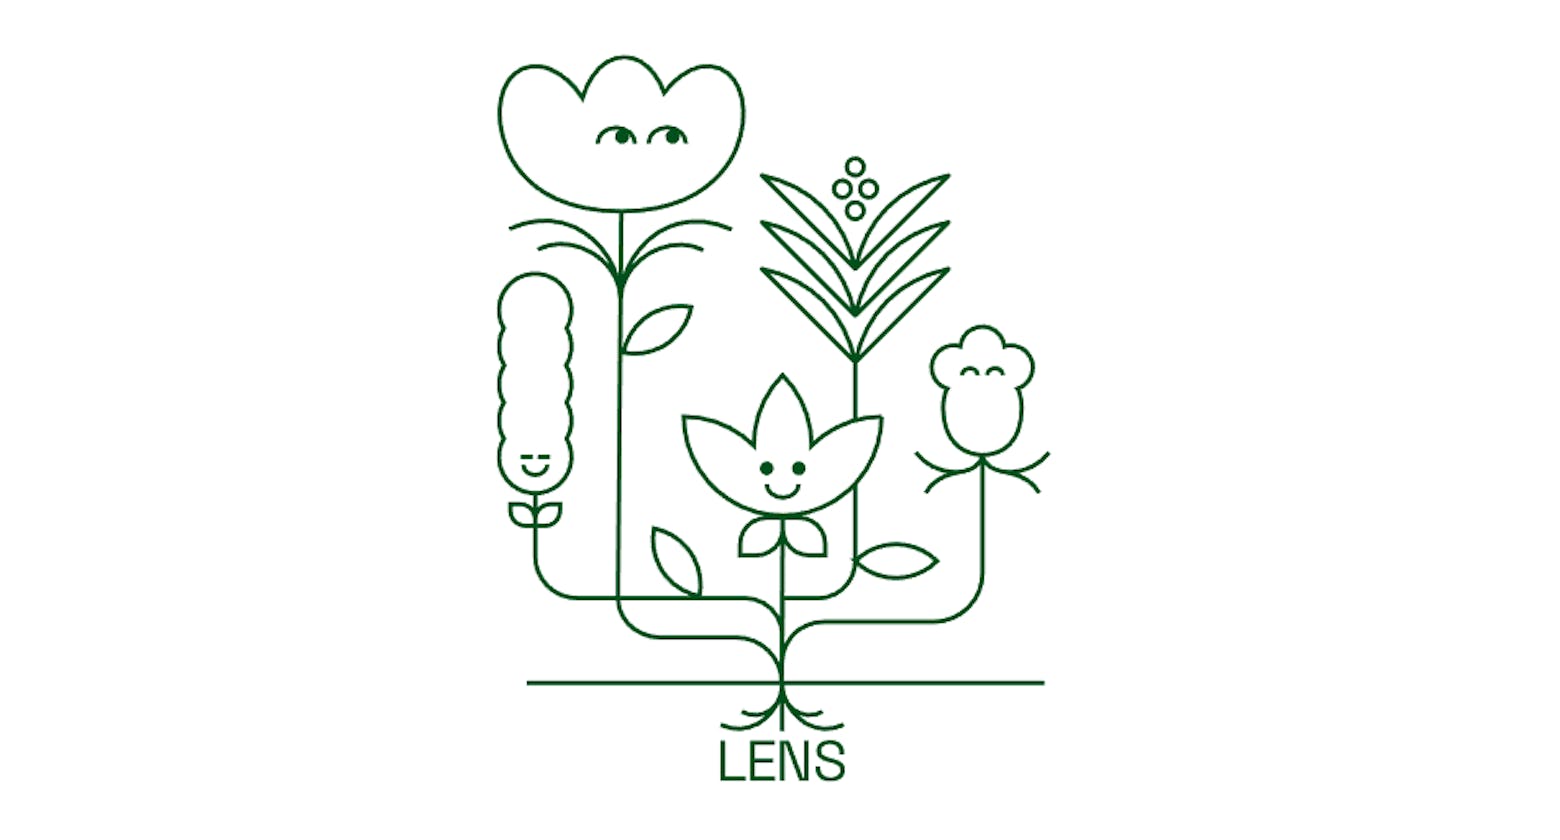 Beginner's Walkthrough: Making Sense of the Lens Protocol